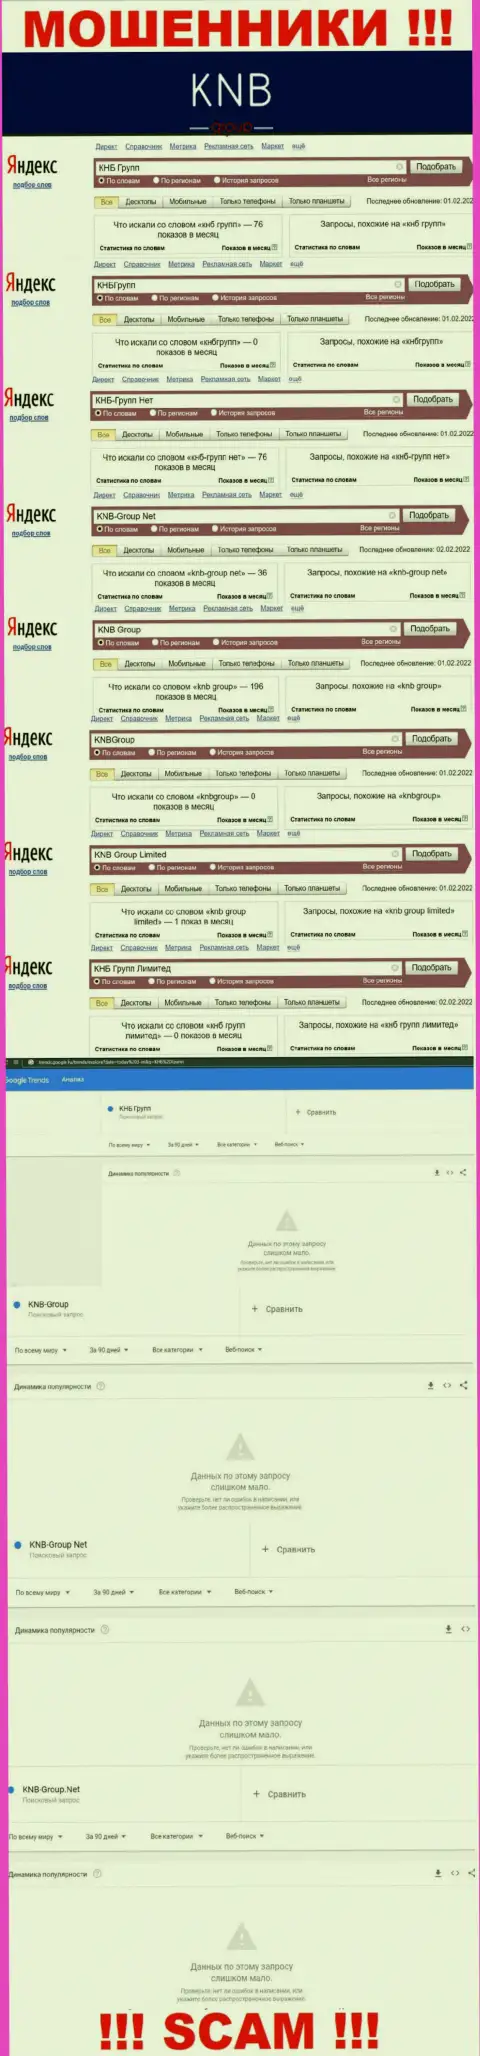 Скриншот итога online-запросов по неправомерно действующей конторе KNB-Group Net